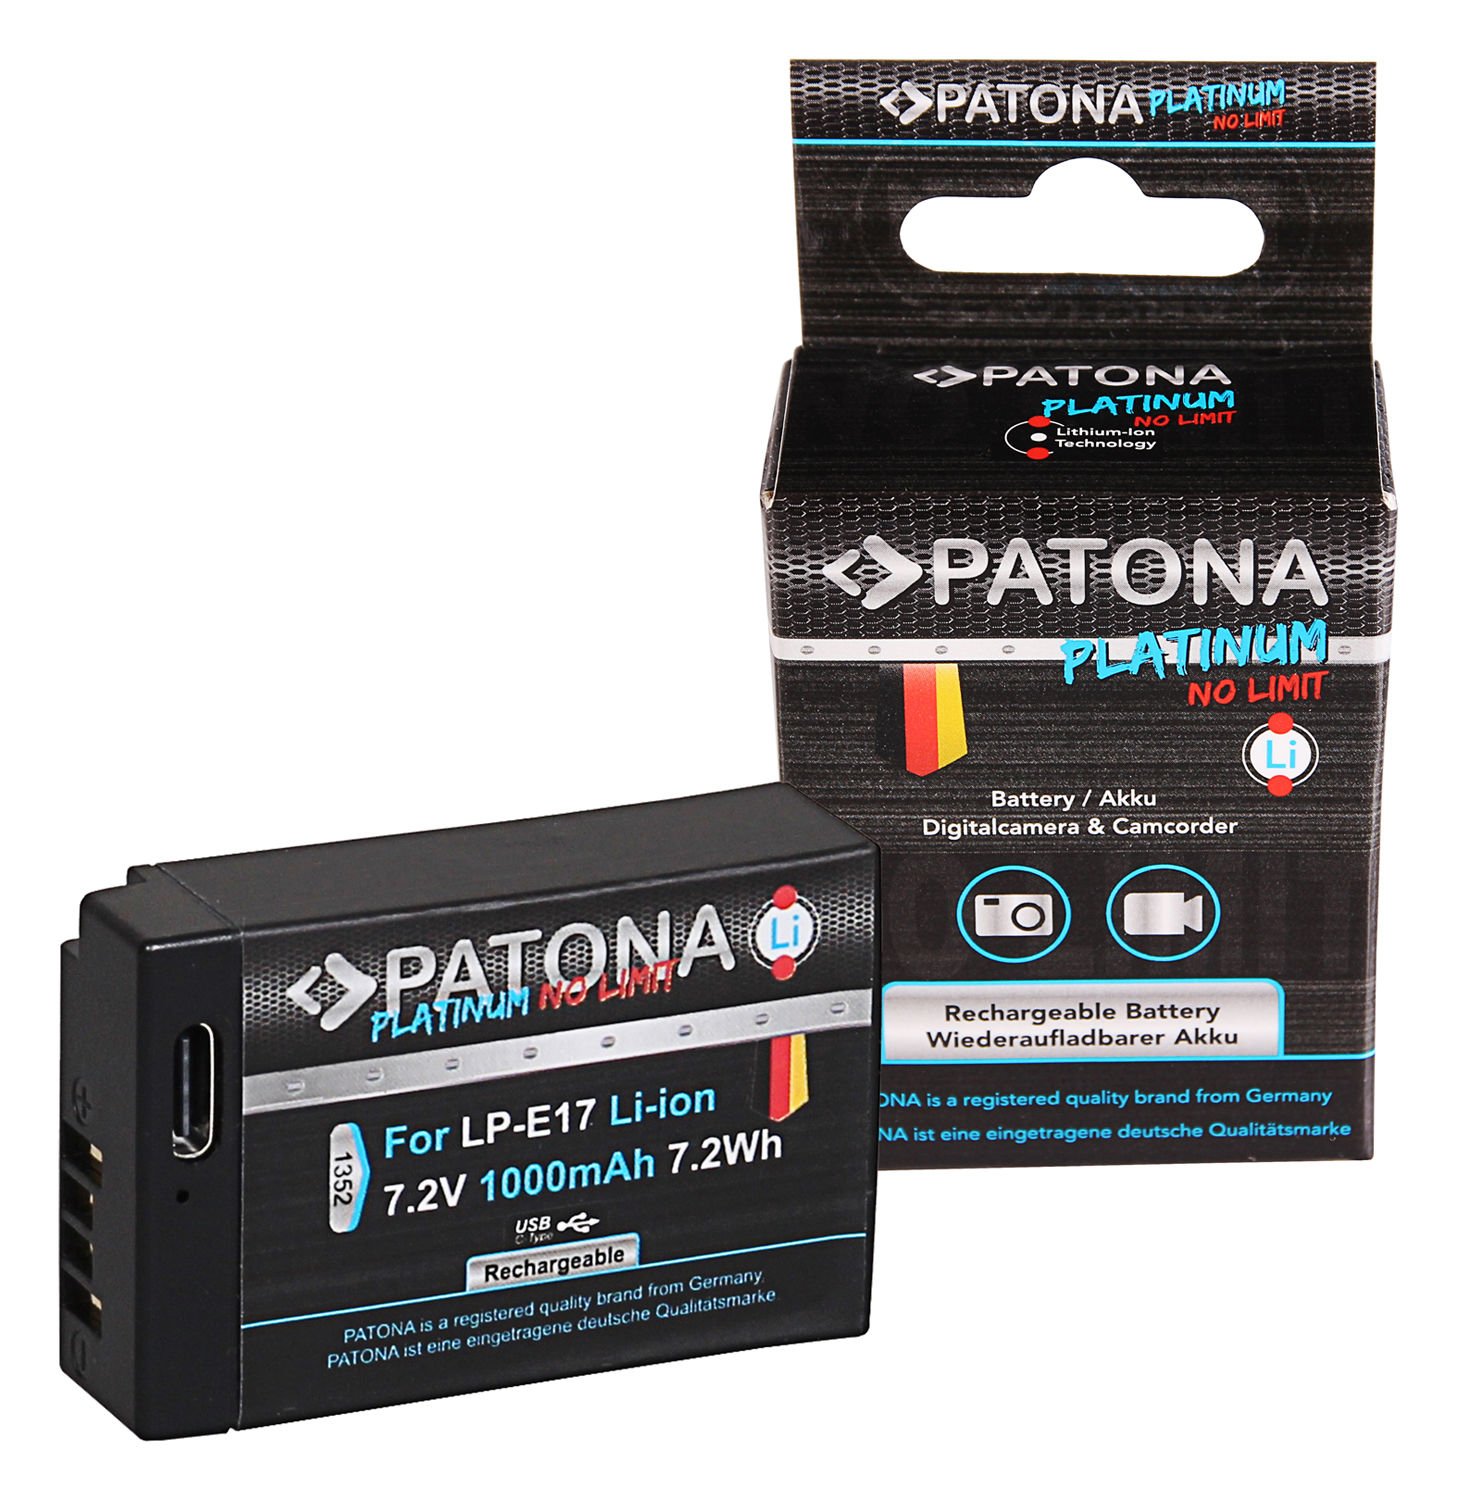 Patona Platinum LP-E17 USB-C Batarya